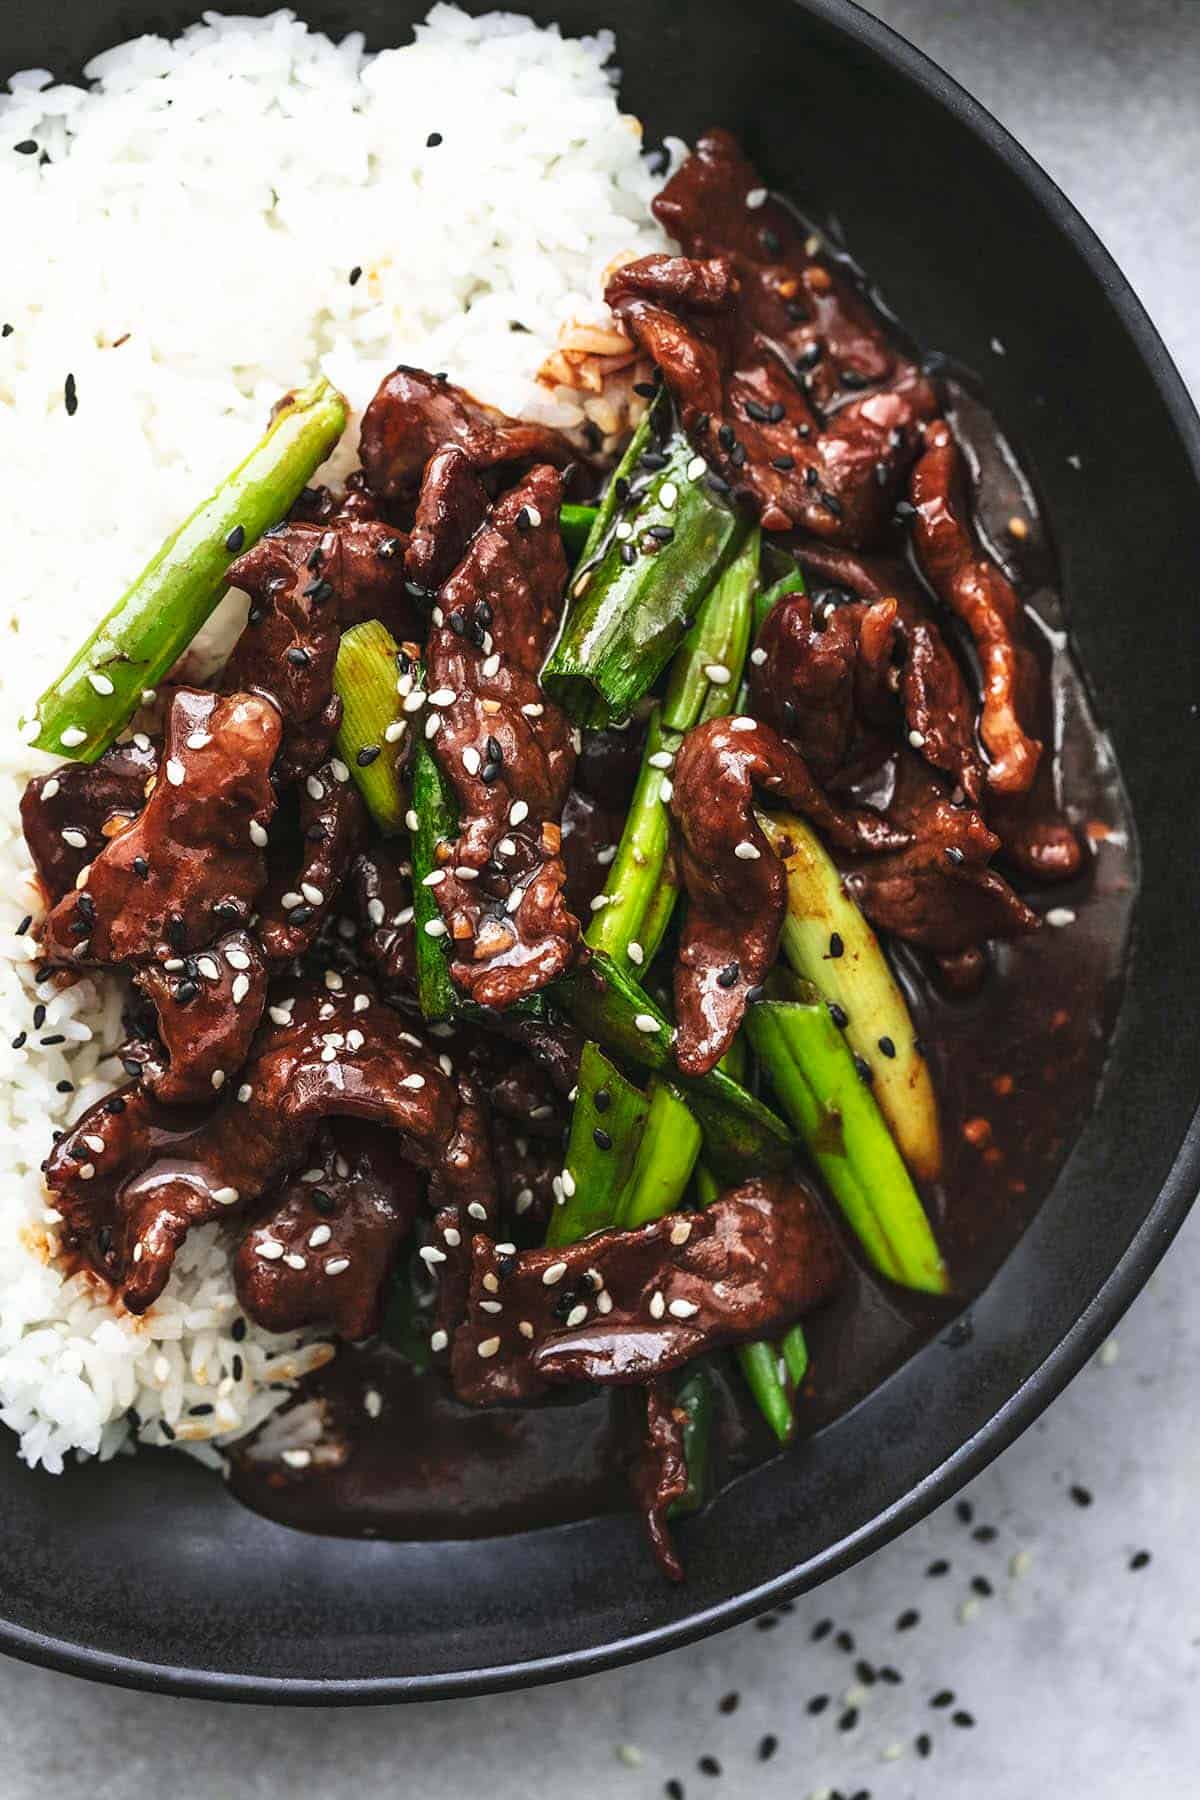 Top 43+ imagen mongolian beef receta pf changs